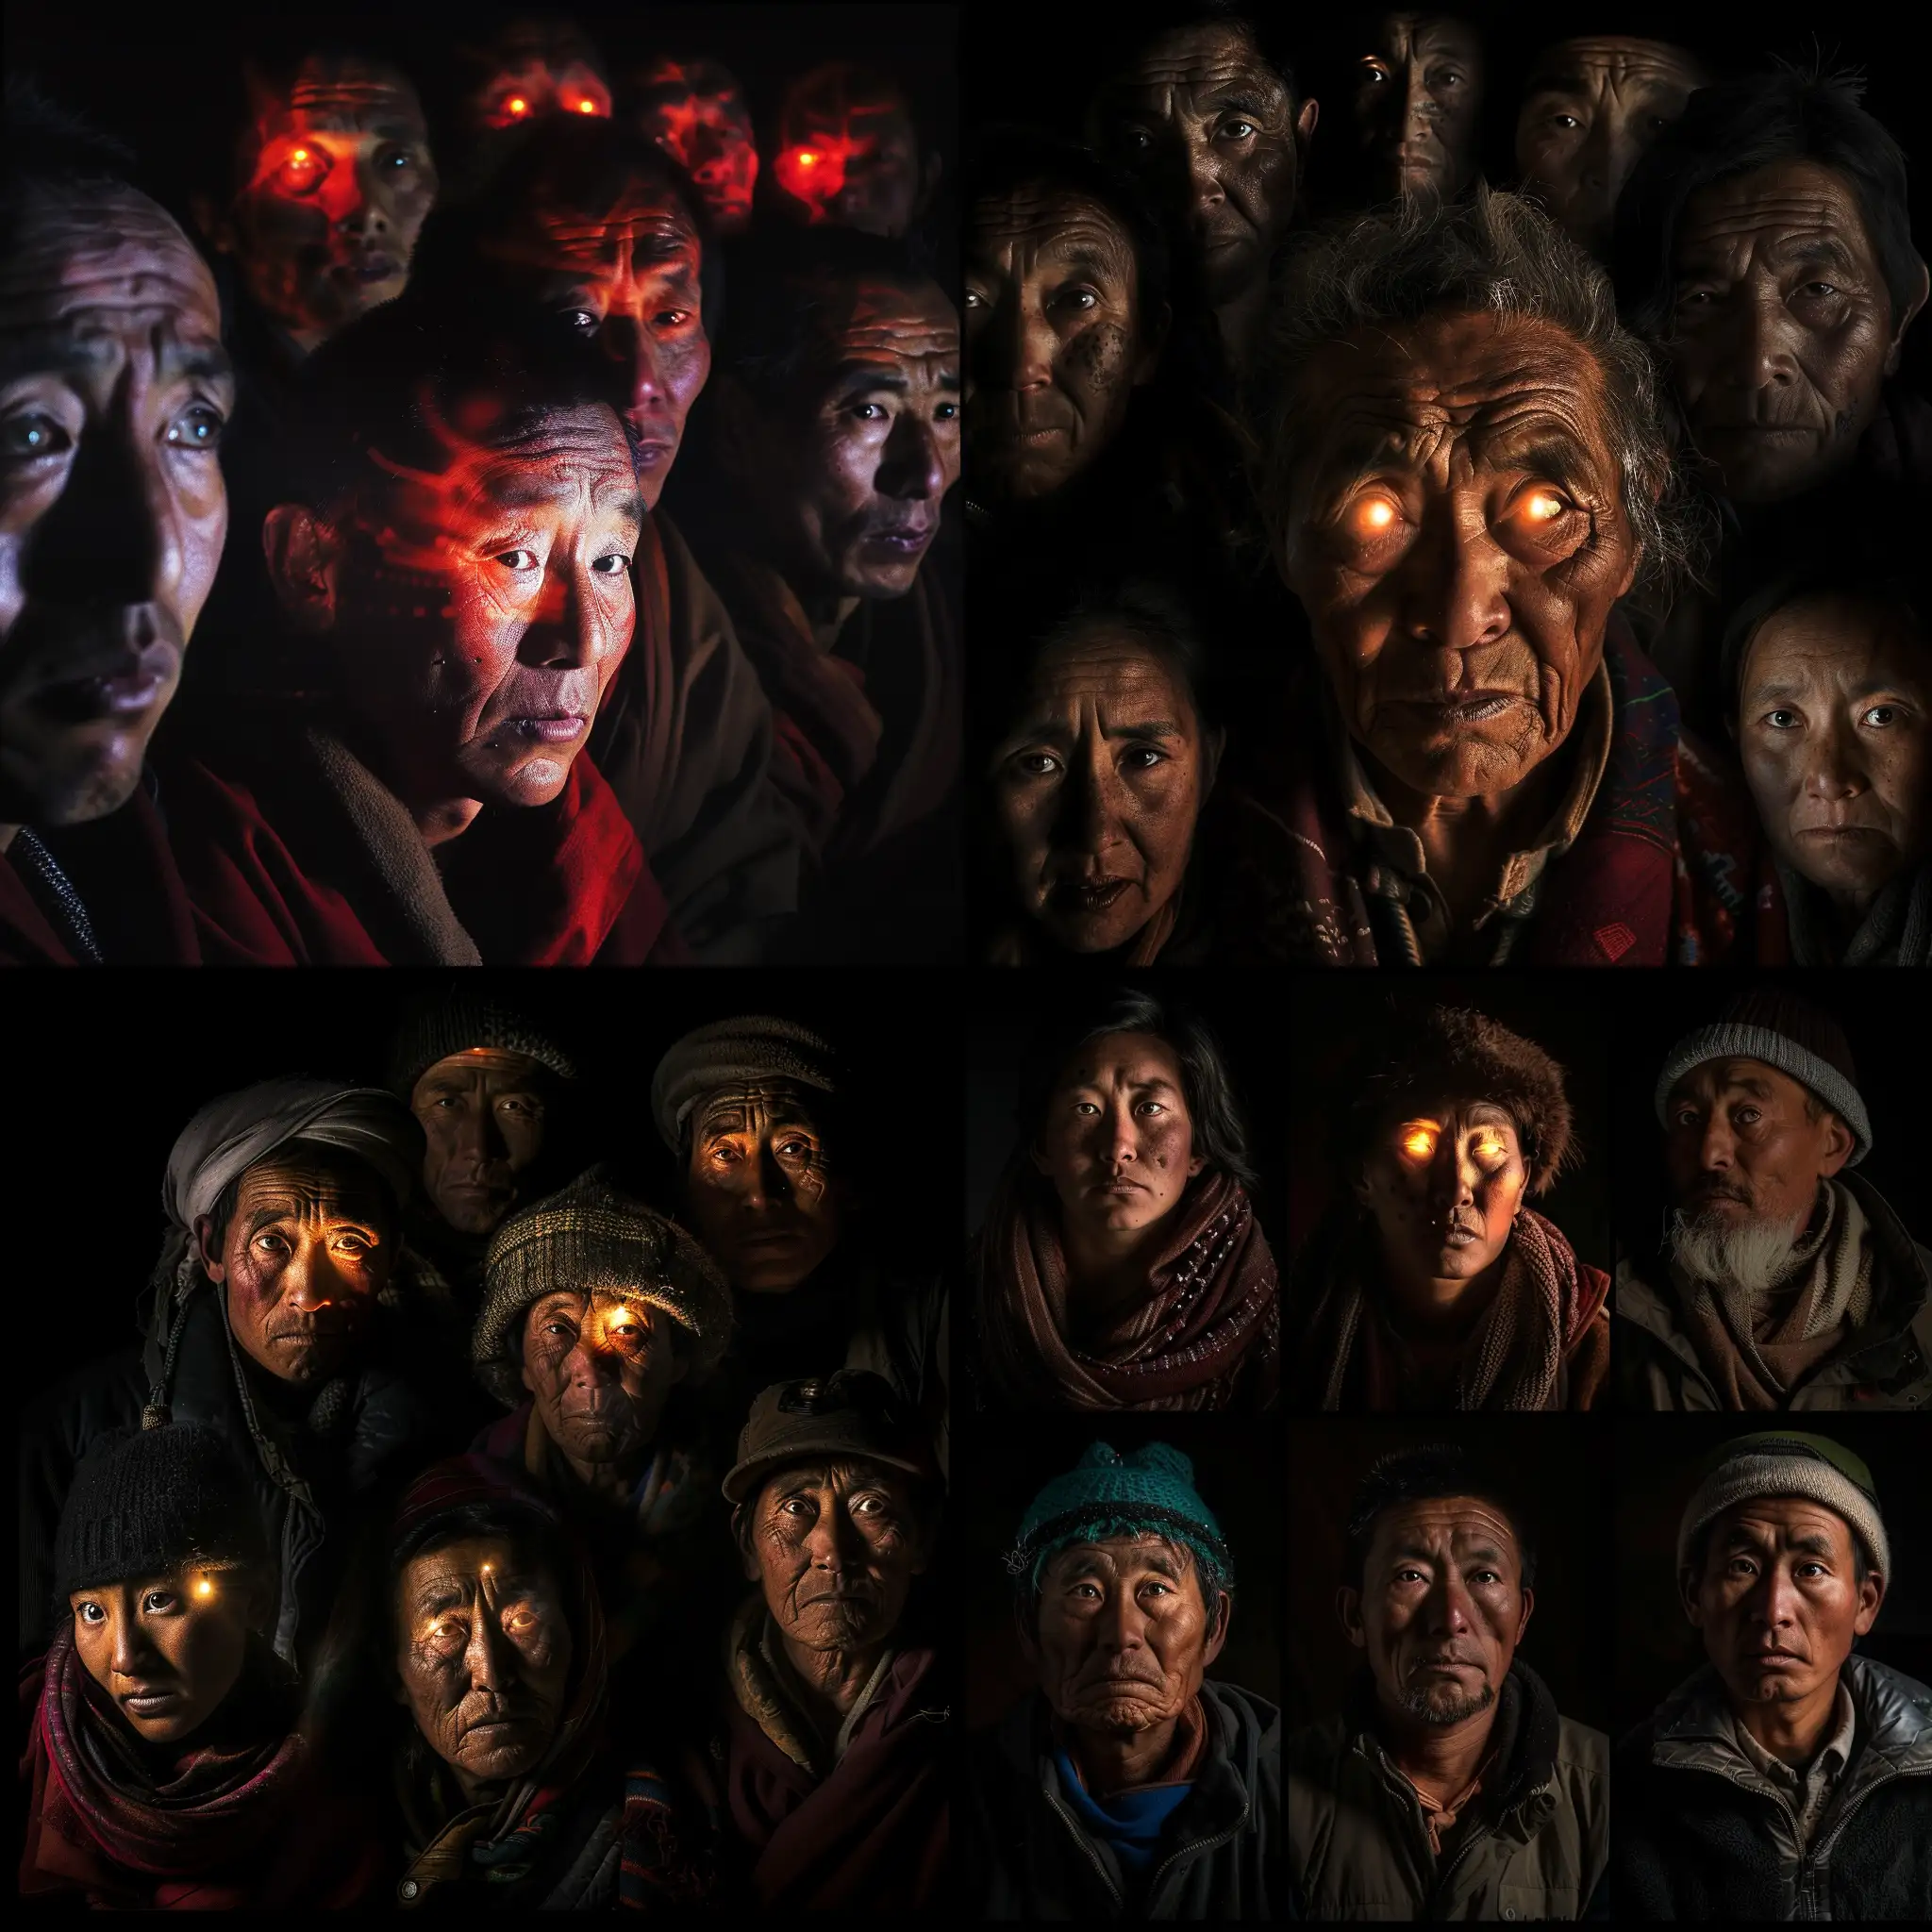 Tibetan-People-Illuminated-Faces-Group-Portrait